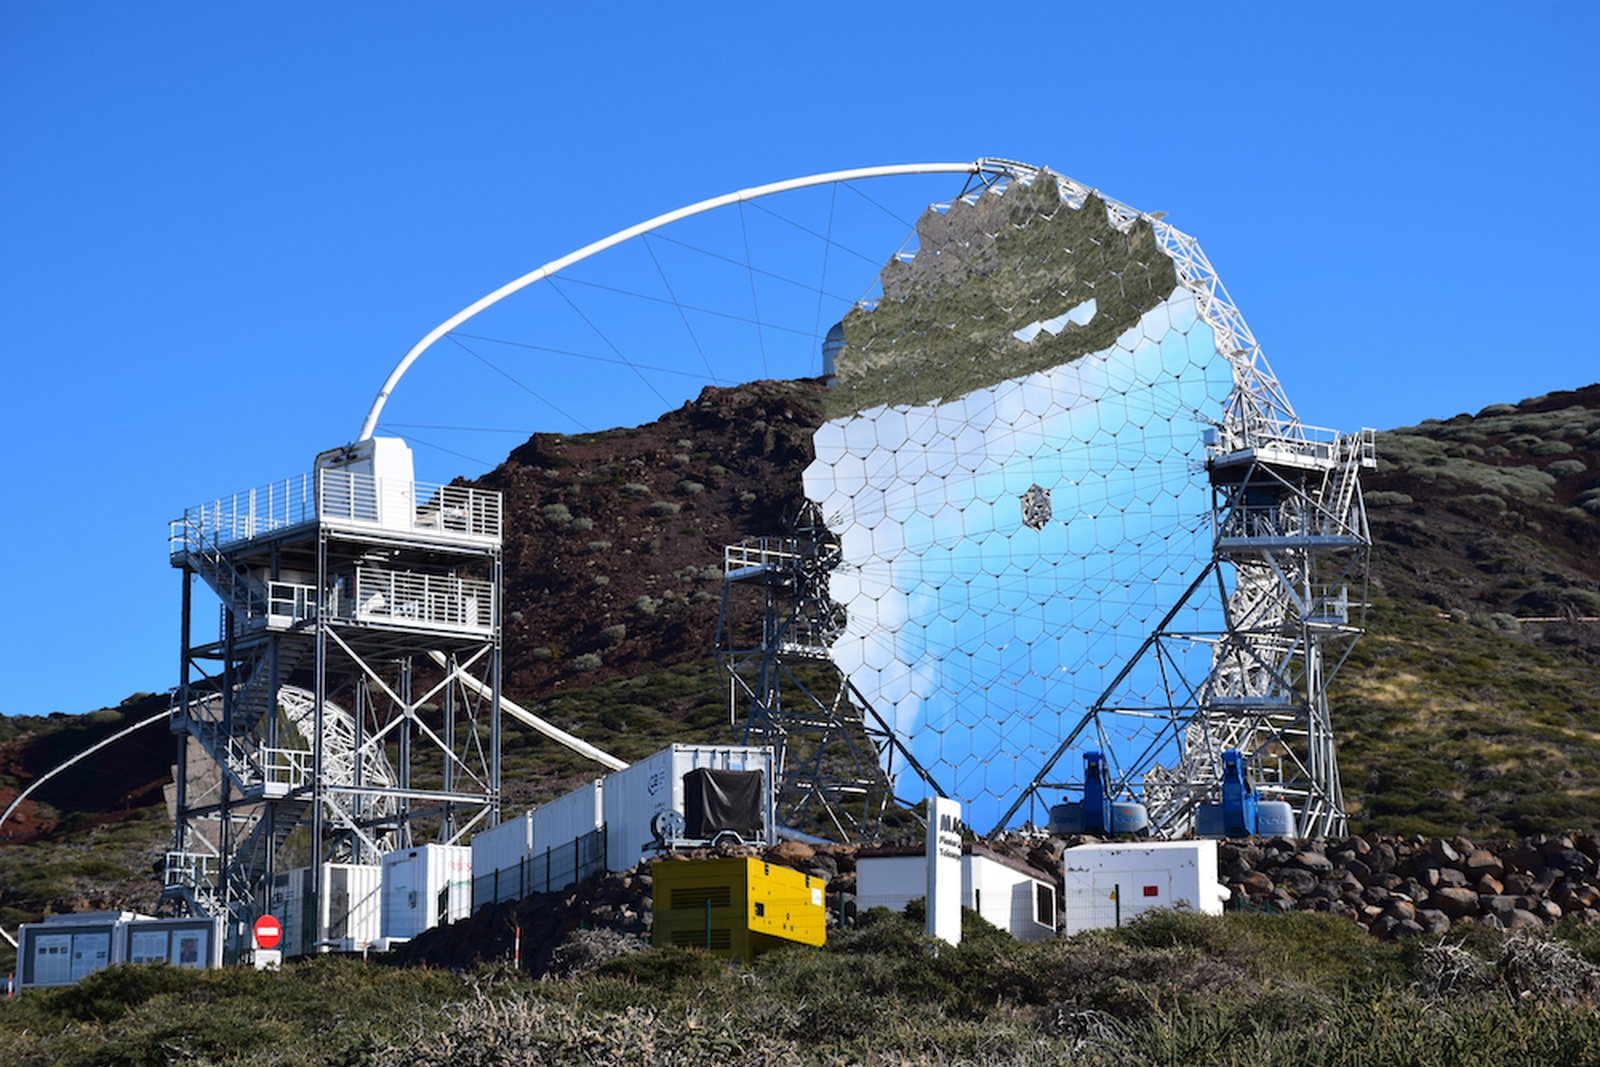 Prvi veliki teleskop za Čerenkovo svetlobo na Severnem observatoriju CTA je bil v letu 2018 nameščen znotraj območja observatorija Roque de los Muchachos na otoku La Palma v Španiji. V noči med 14. in 15. decembrom 2018 je uspešno izvedel prve meritve. Avtor: UNG/S. Stanič, 14. 11. 2018, La Palma, Španija.